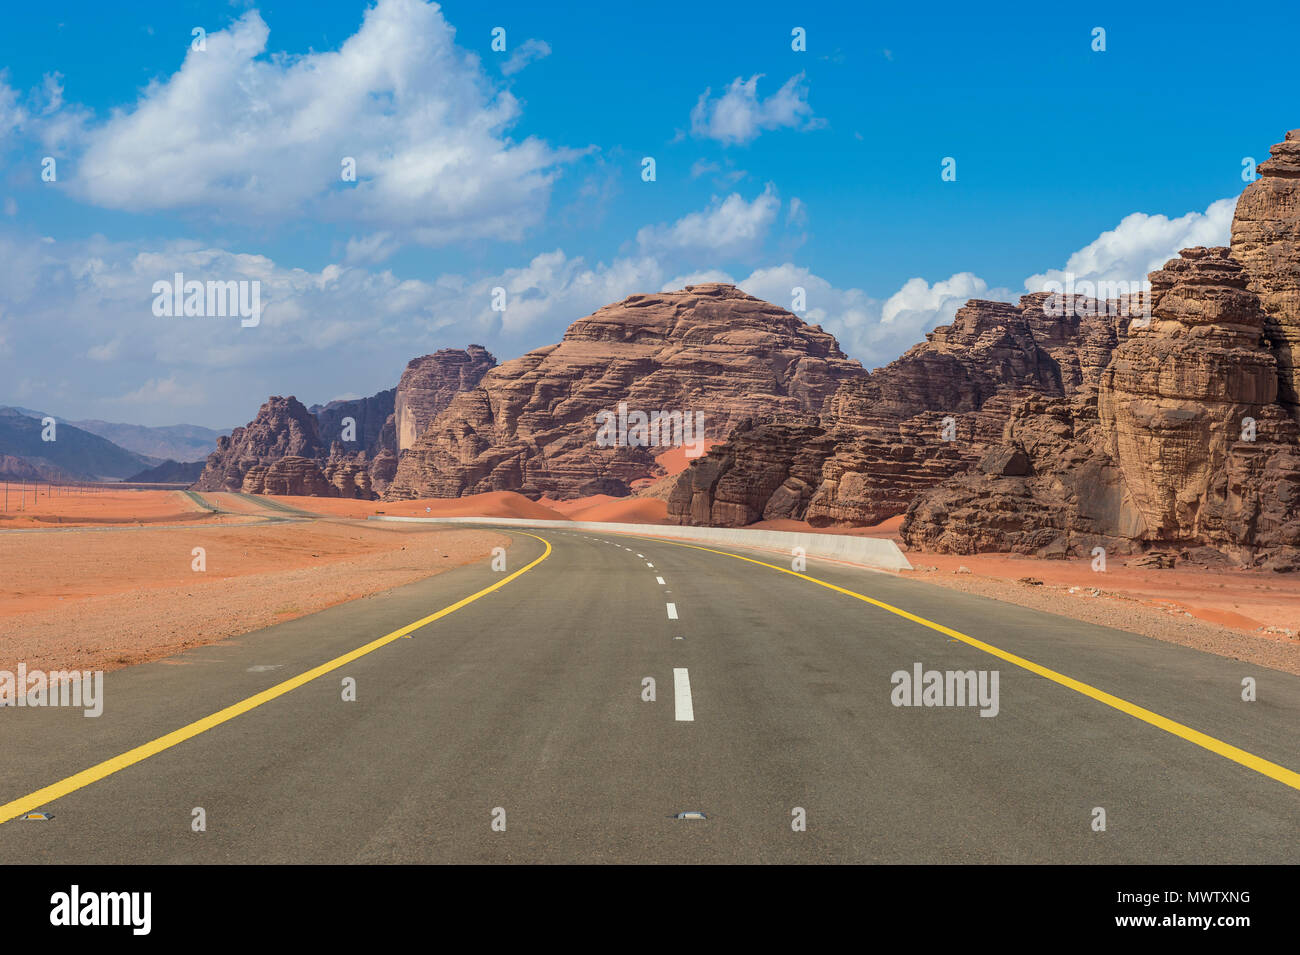 Route menant à travers la beauté des paysages dans les territoires du nord de l'Arabie saoudite, Moyen Orient Banque D'Images